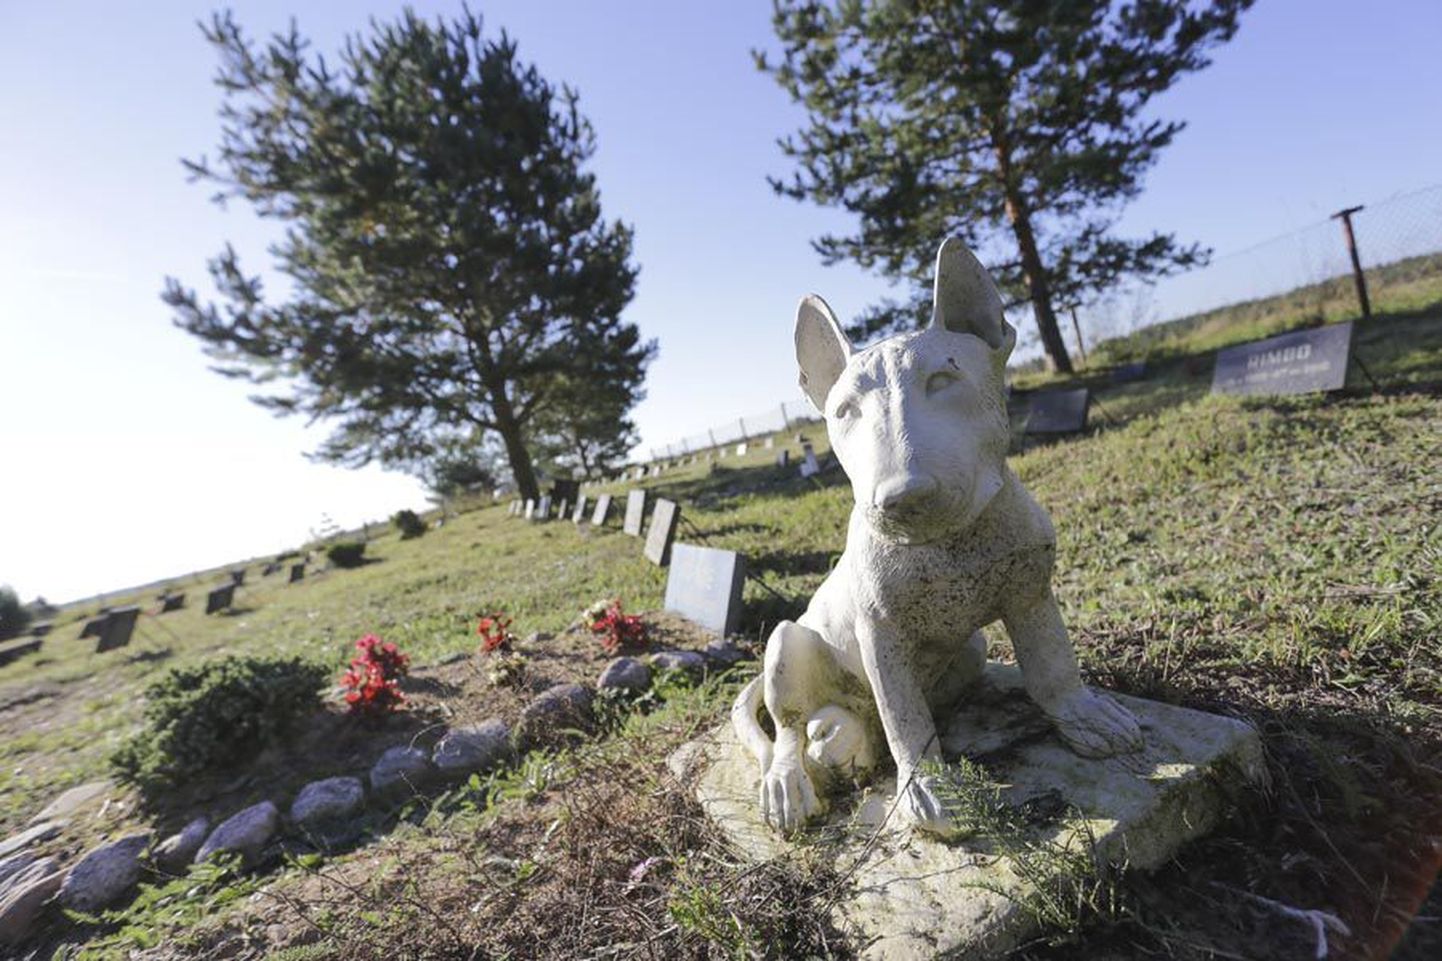 Eestis on lemmikloomade matmisplatse ajapikku rajatud mitmele poole, kuid Viljandis seda veel pole. Pilt on tehtud Rakvere külje all asuval kalmistul.